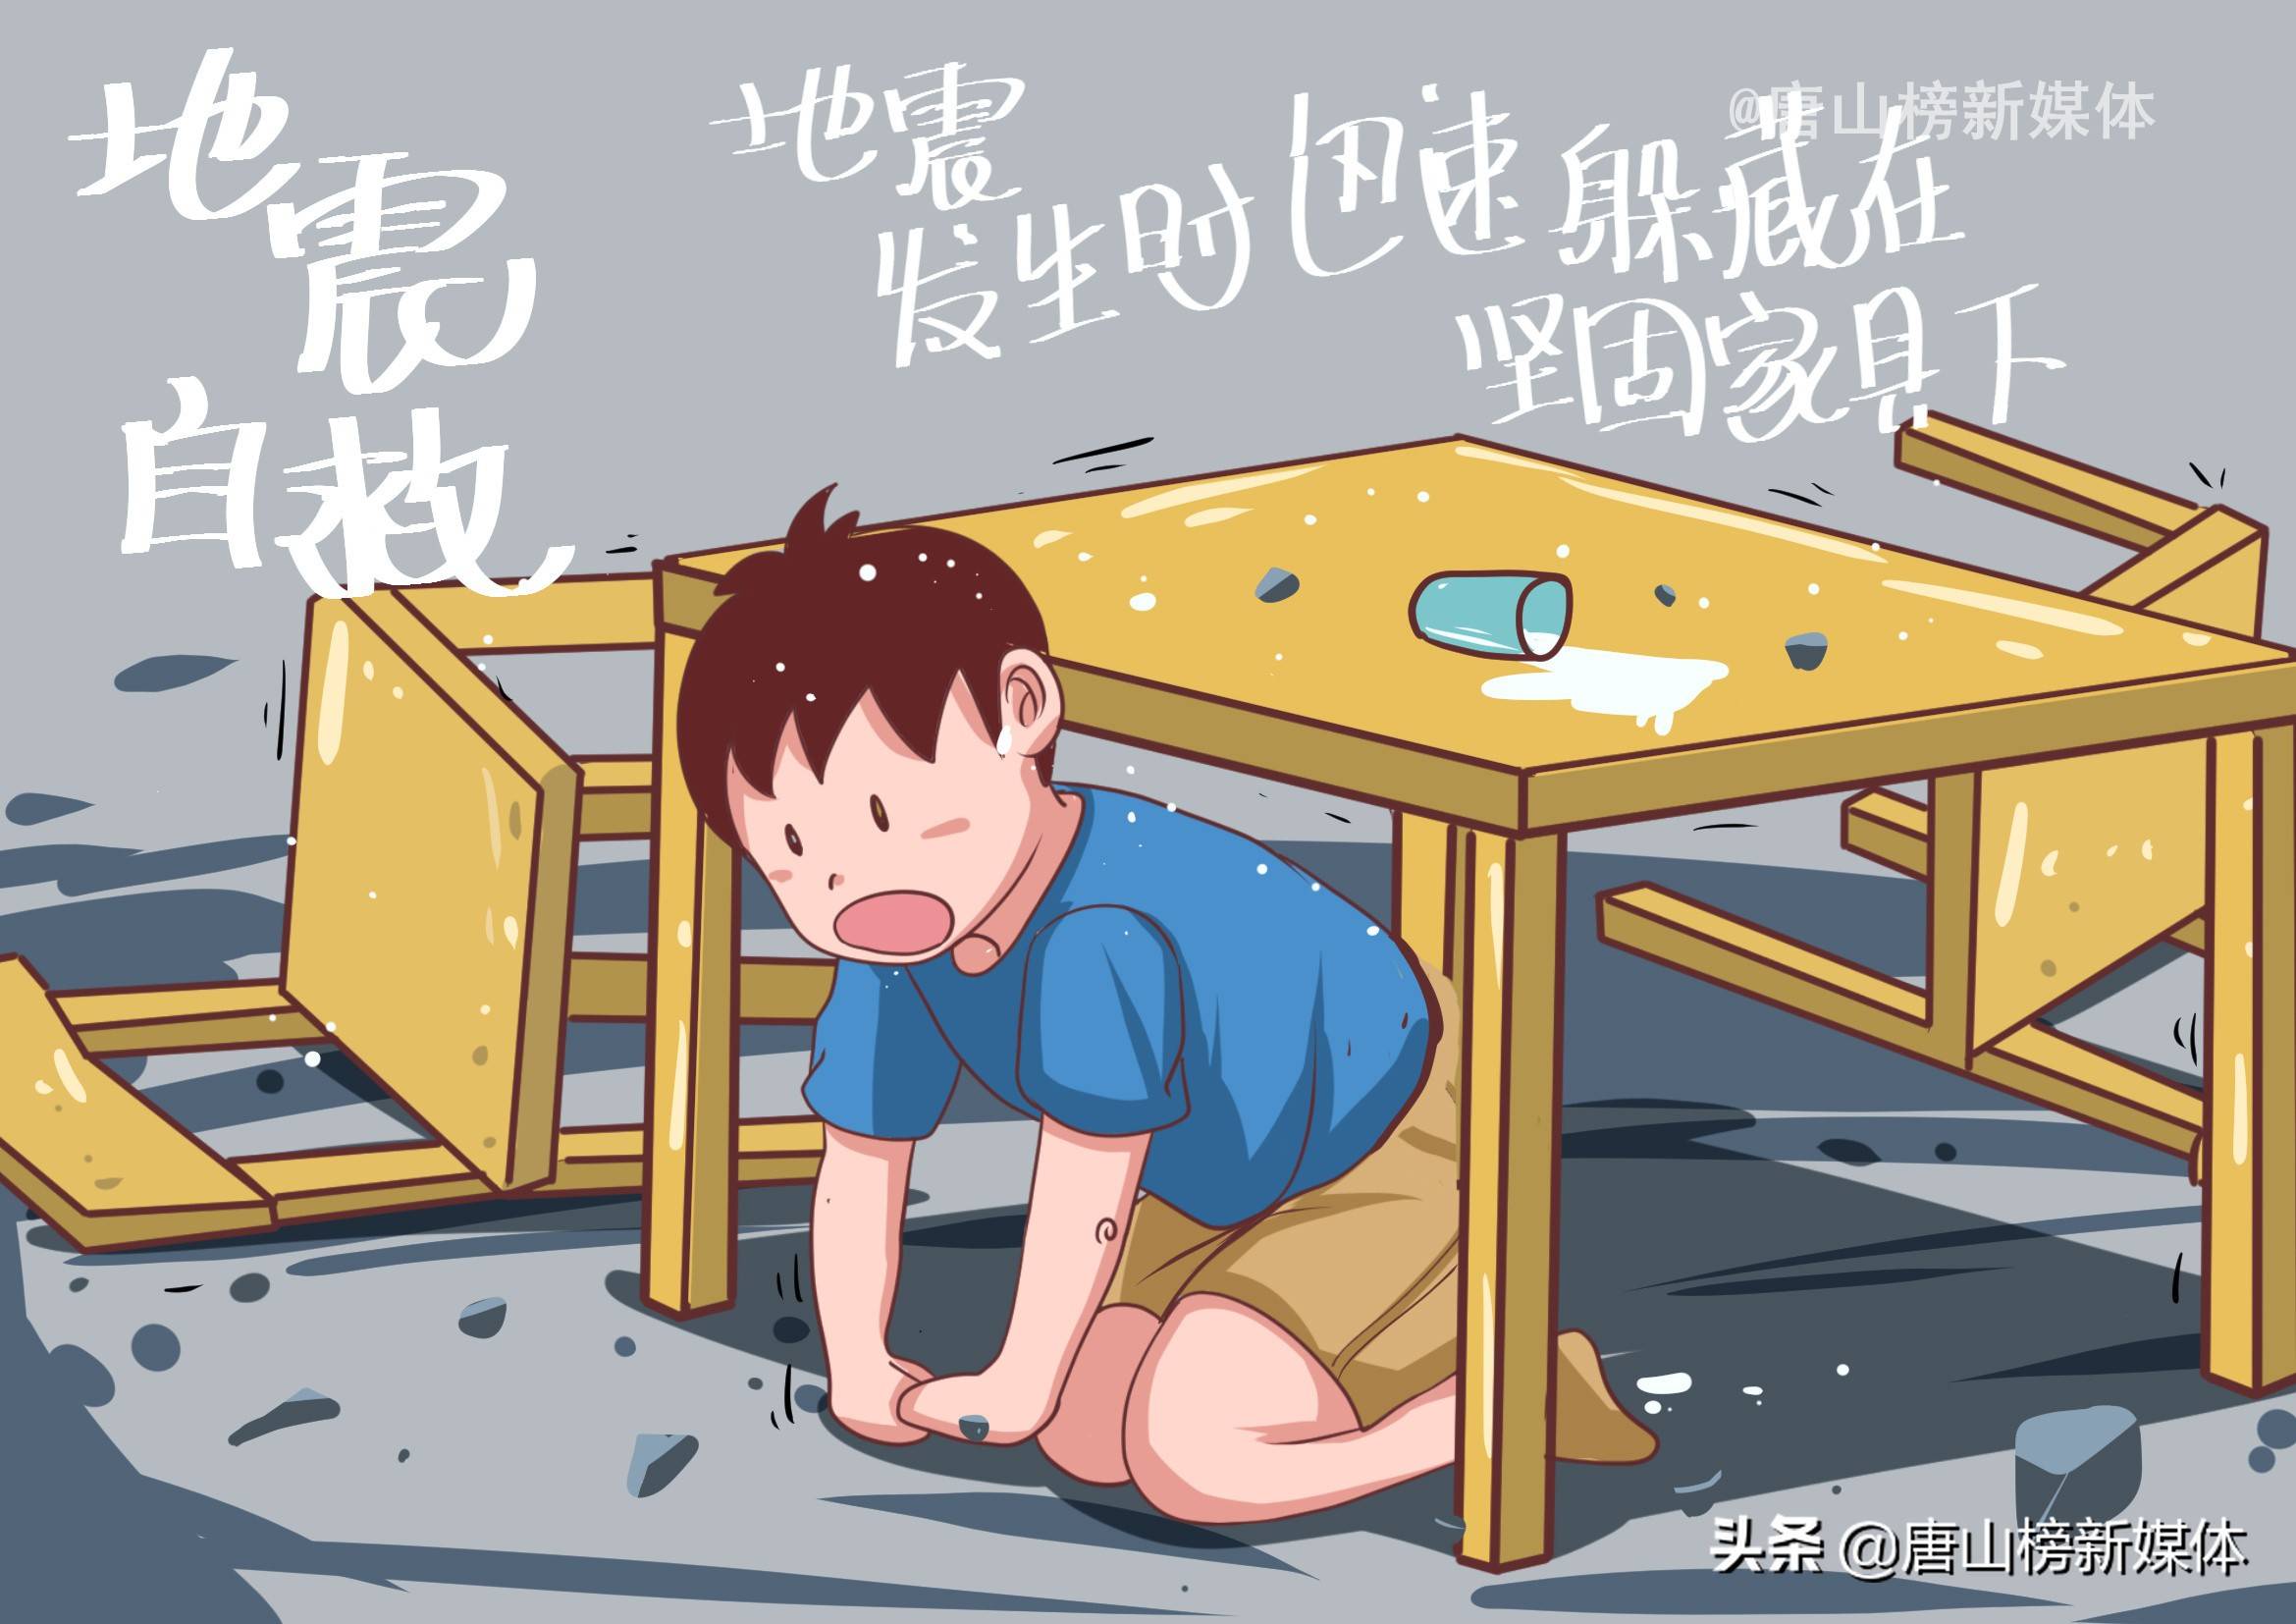 河北唐山:插画丨地震自救小常识